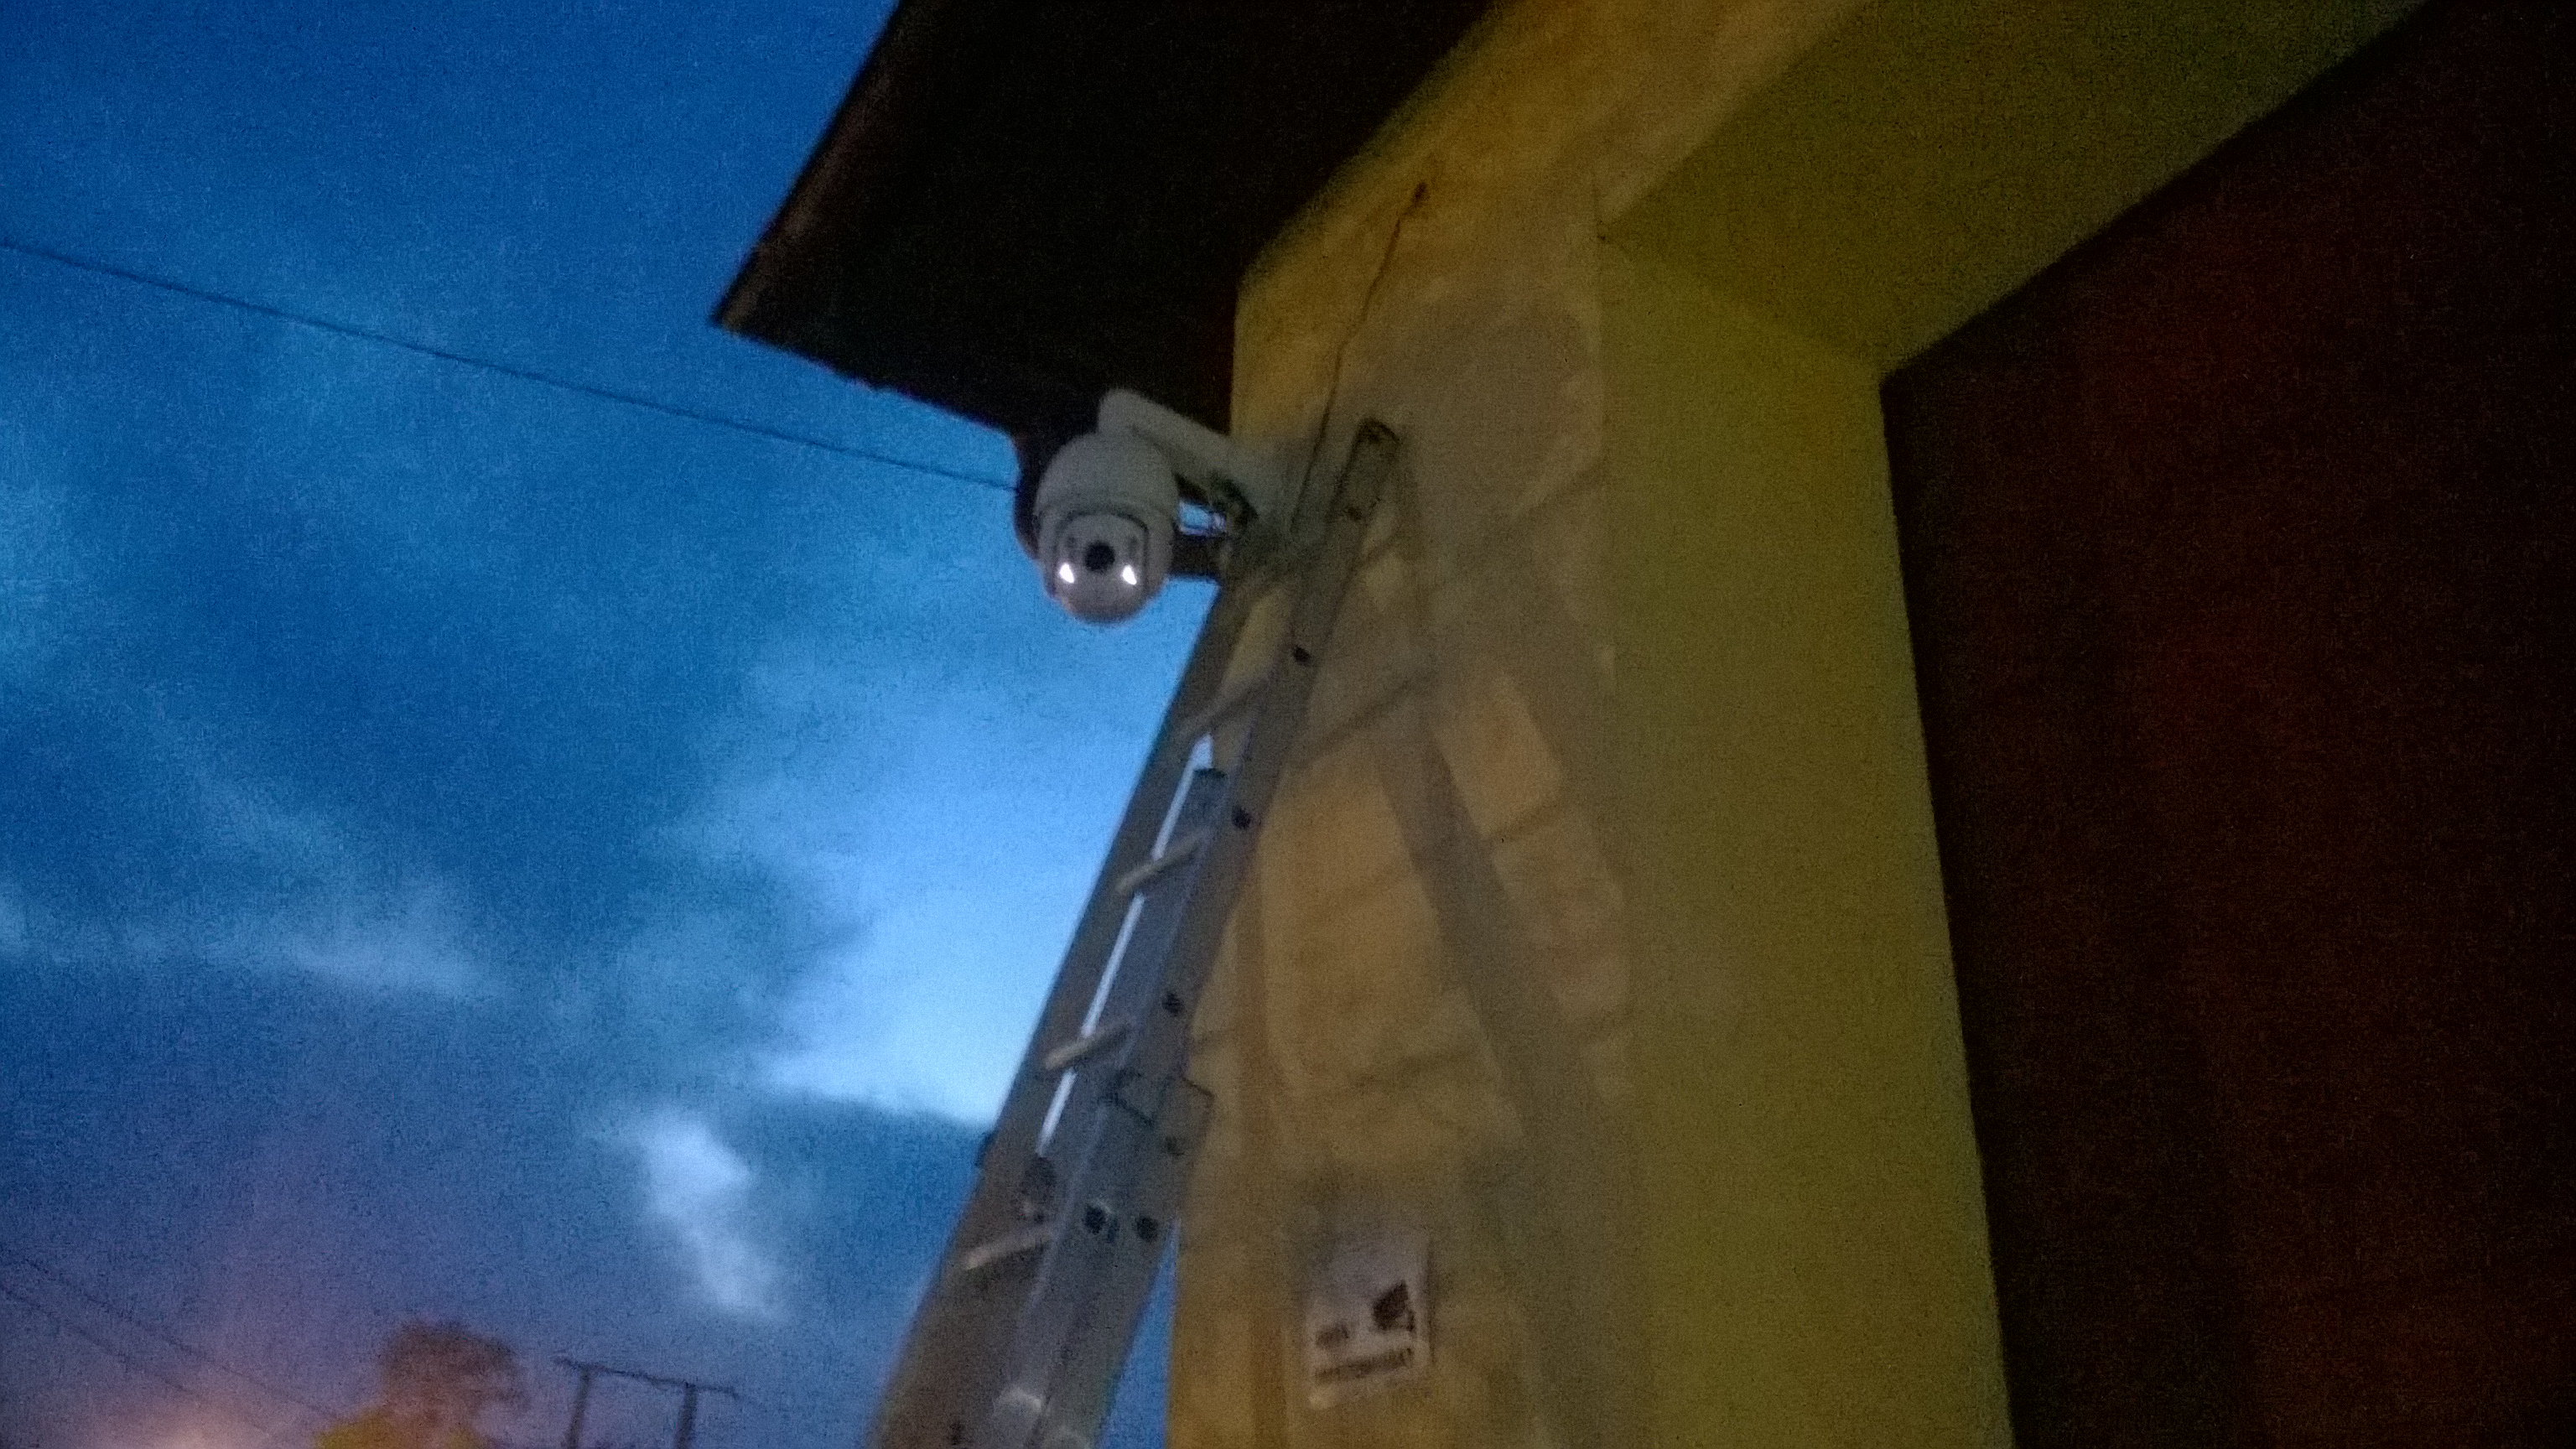 Zainstalowaliśmy monitoring na budynku jednostki OSP Straż pożarna w Stalowa Wola Charzewice monitoring hikvision